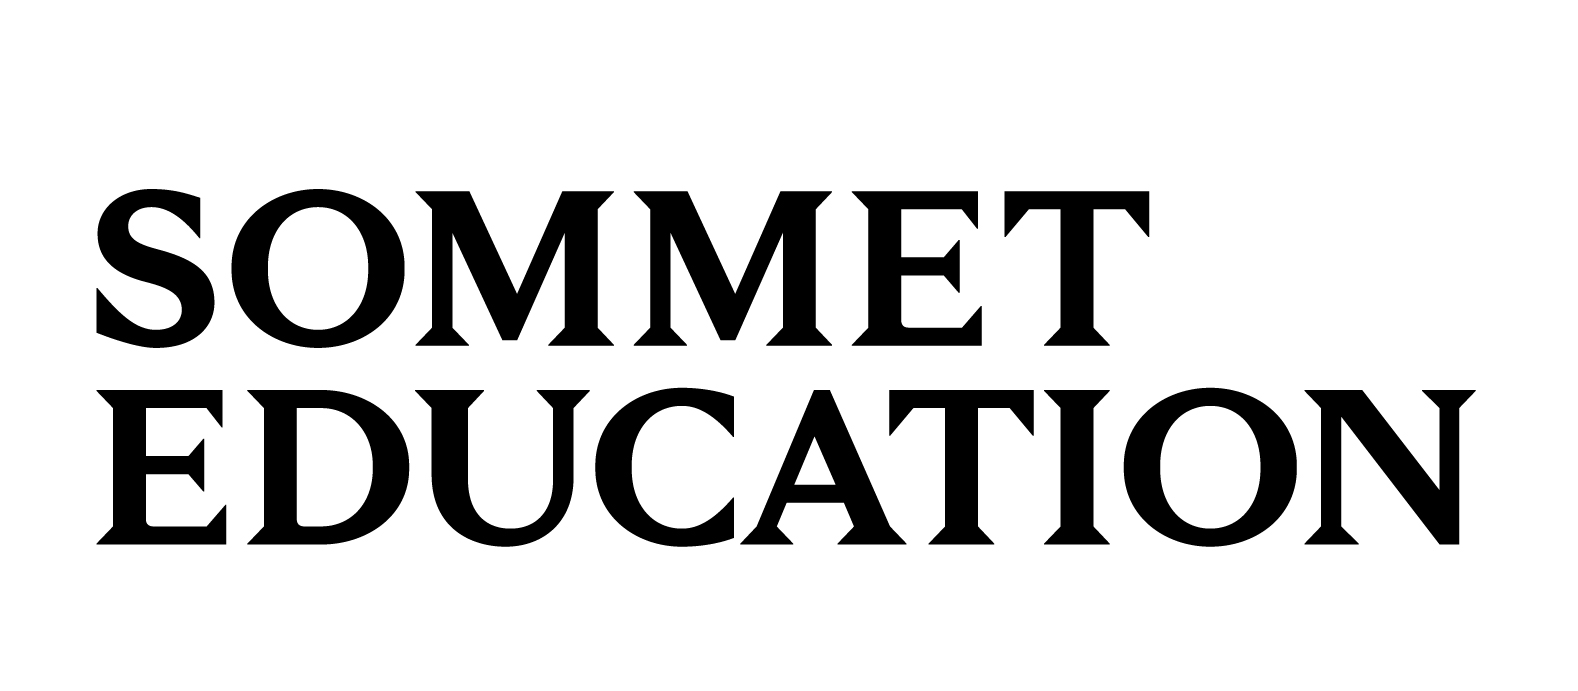 Sommet Education